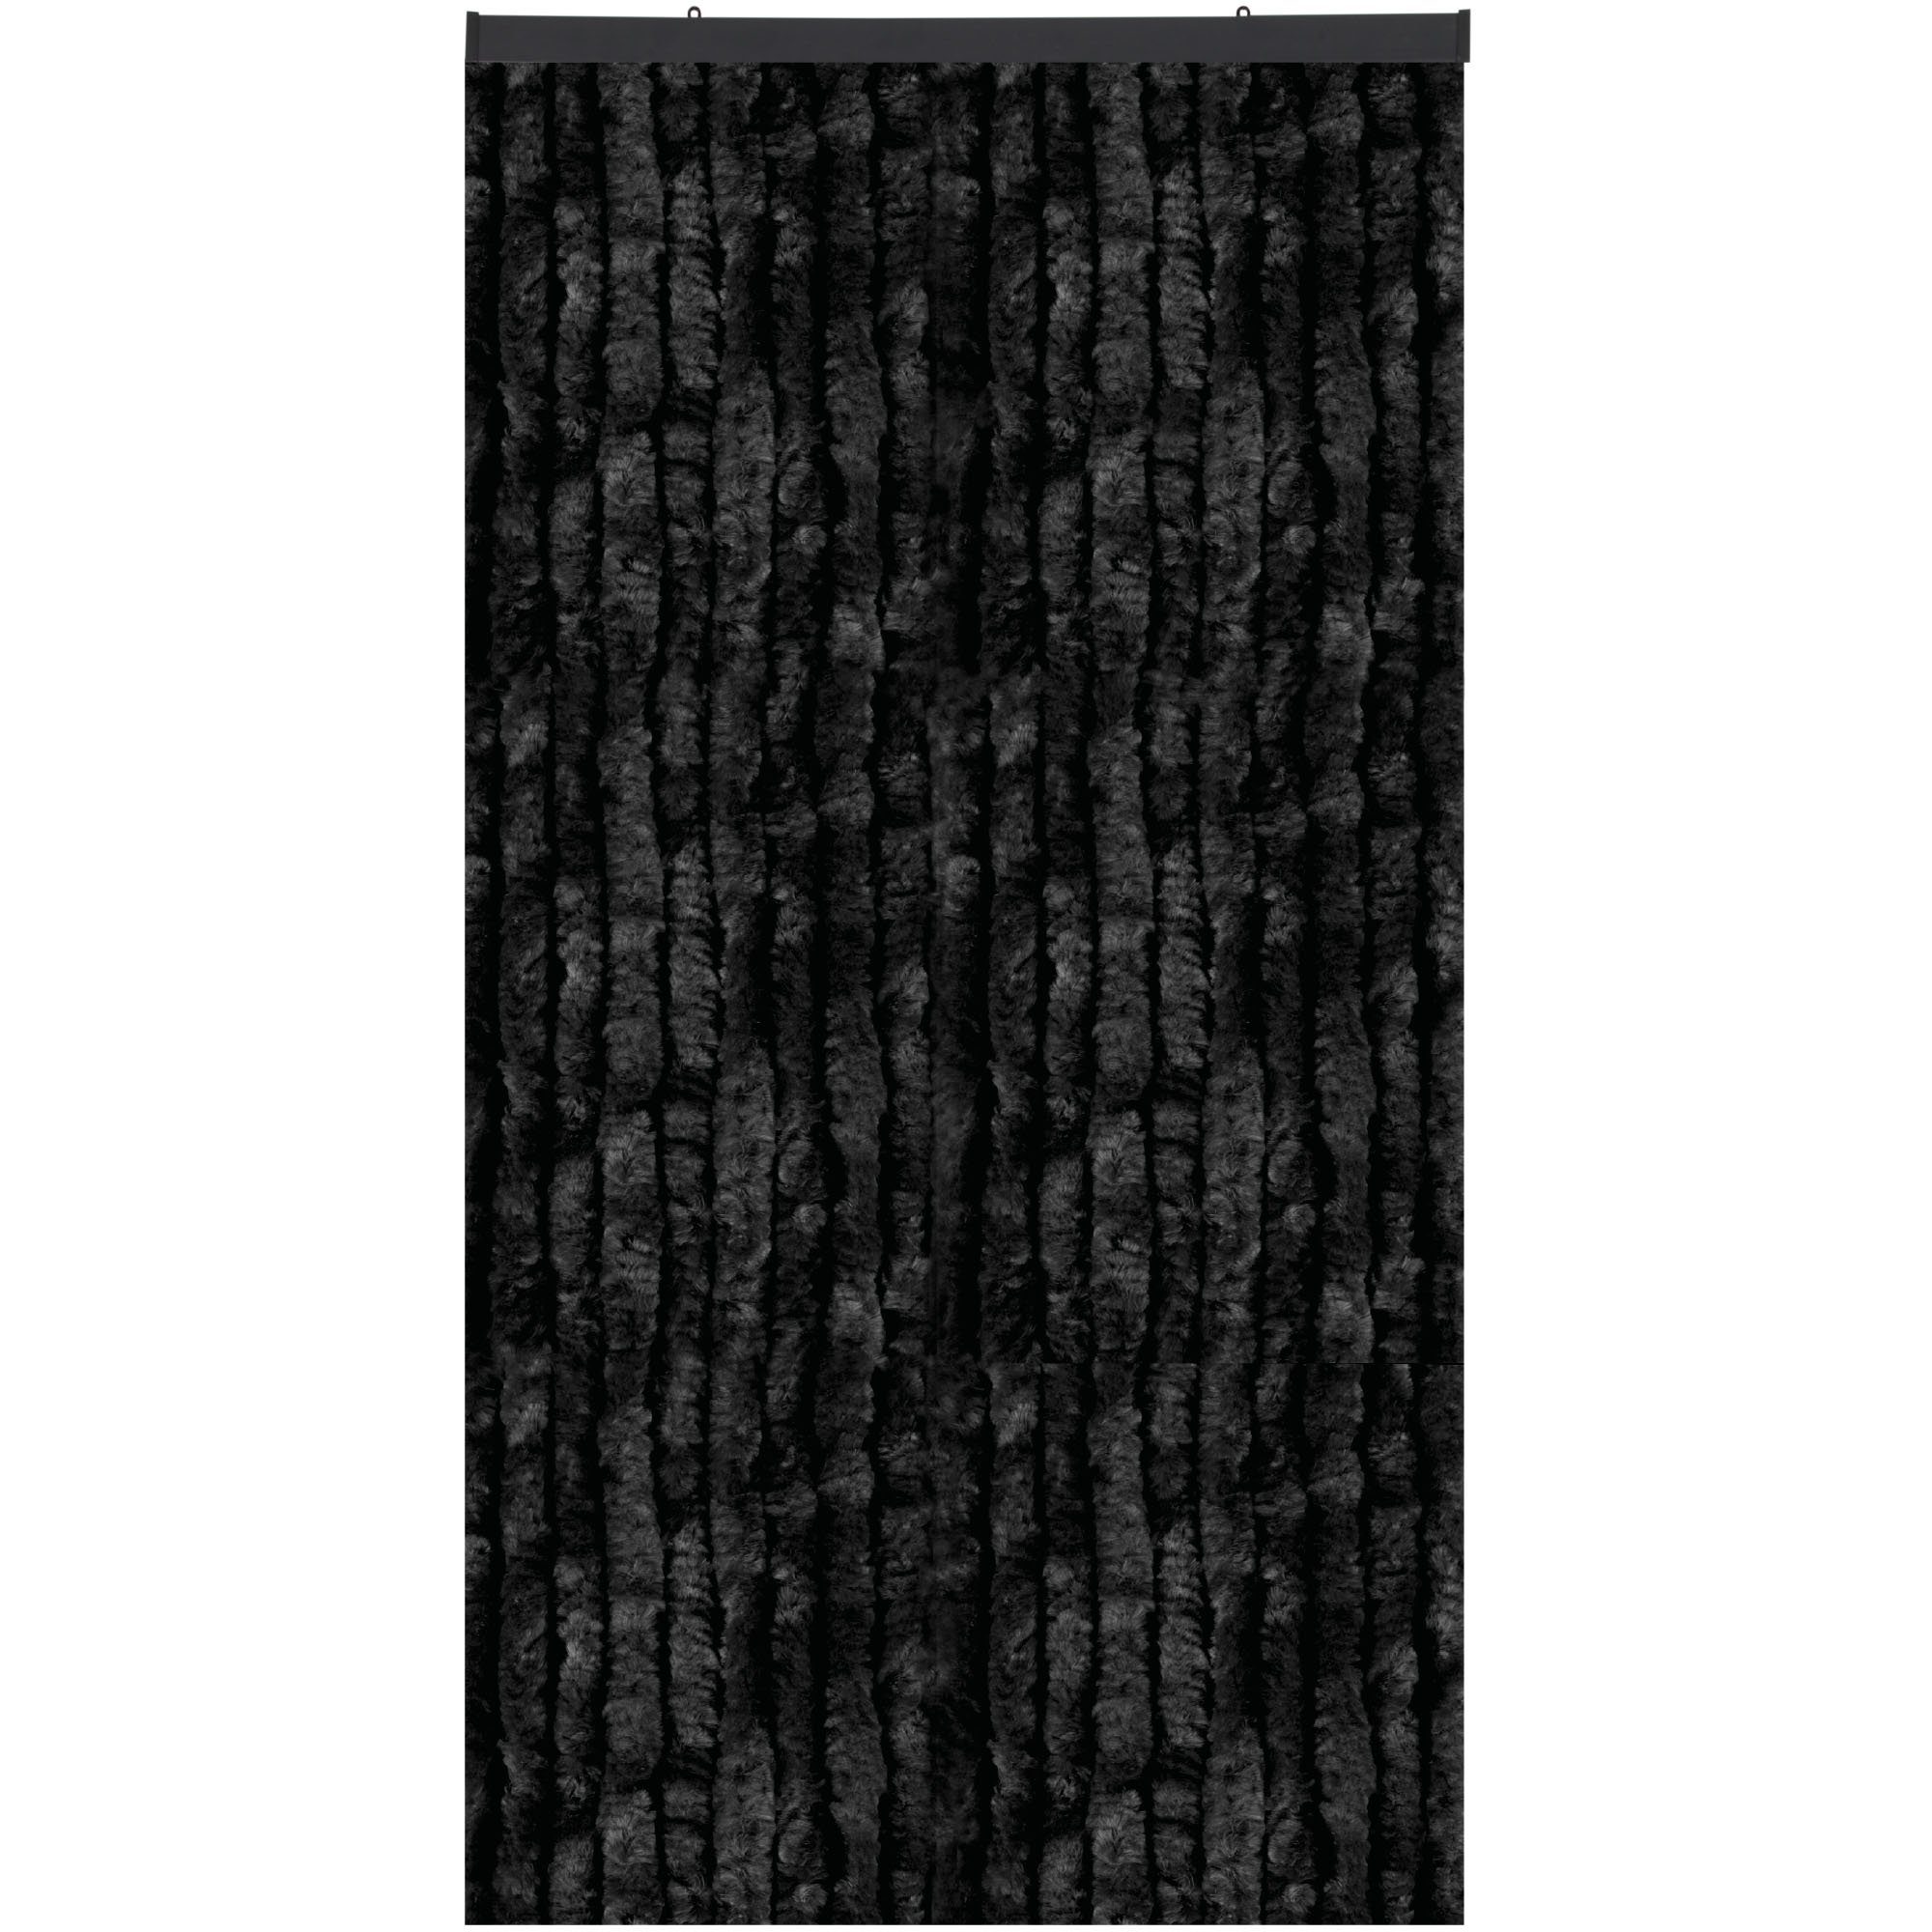 Türvorhang Flauschi, Arsvita, Ösen (1 St), Flauschvorhang 160x185 cm in Unistreifen schwarz, viele Farben